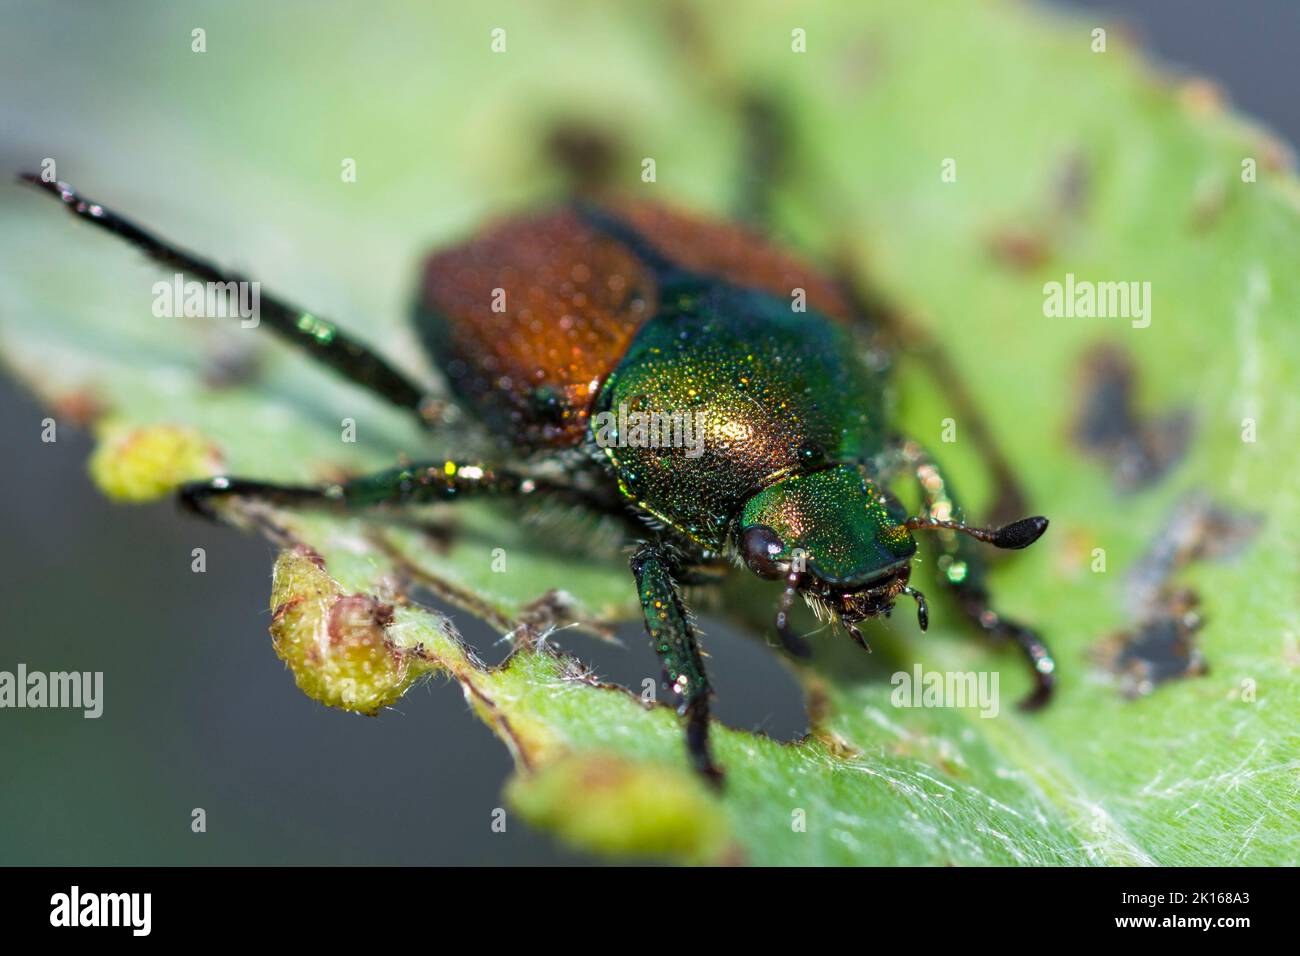 Japanese beetle (Popillia Japonica) on a leaf Stock Photo